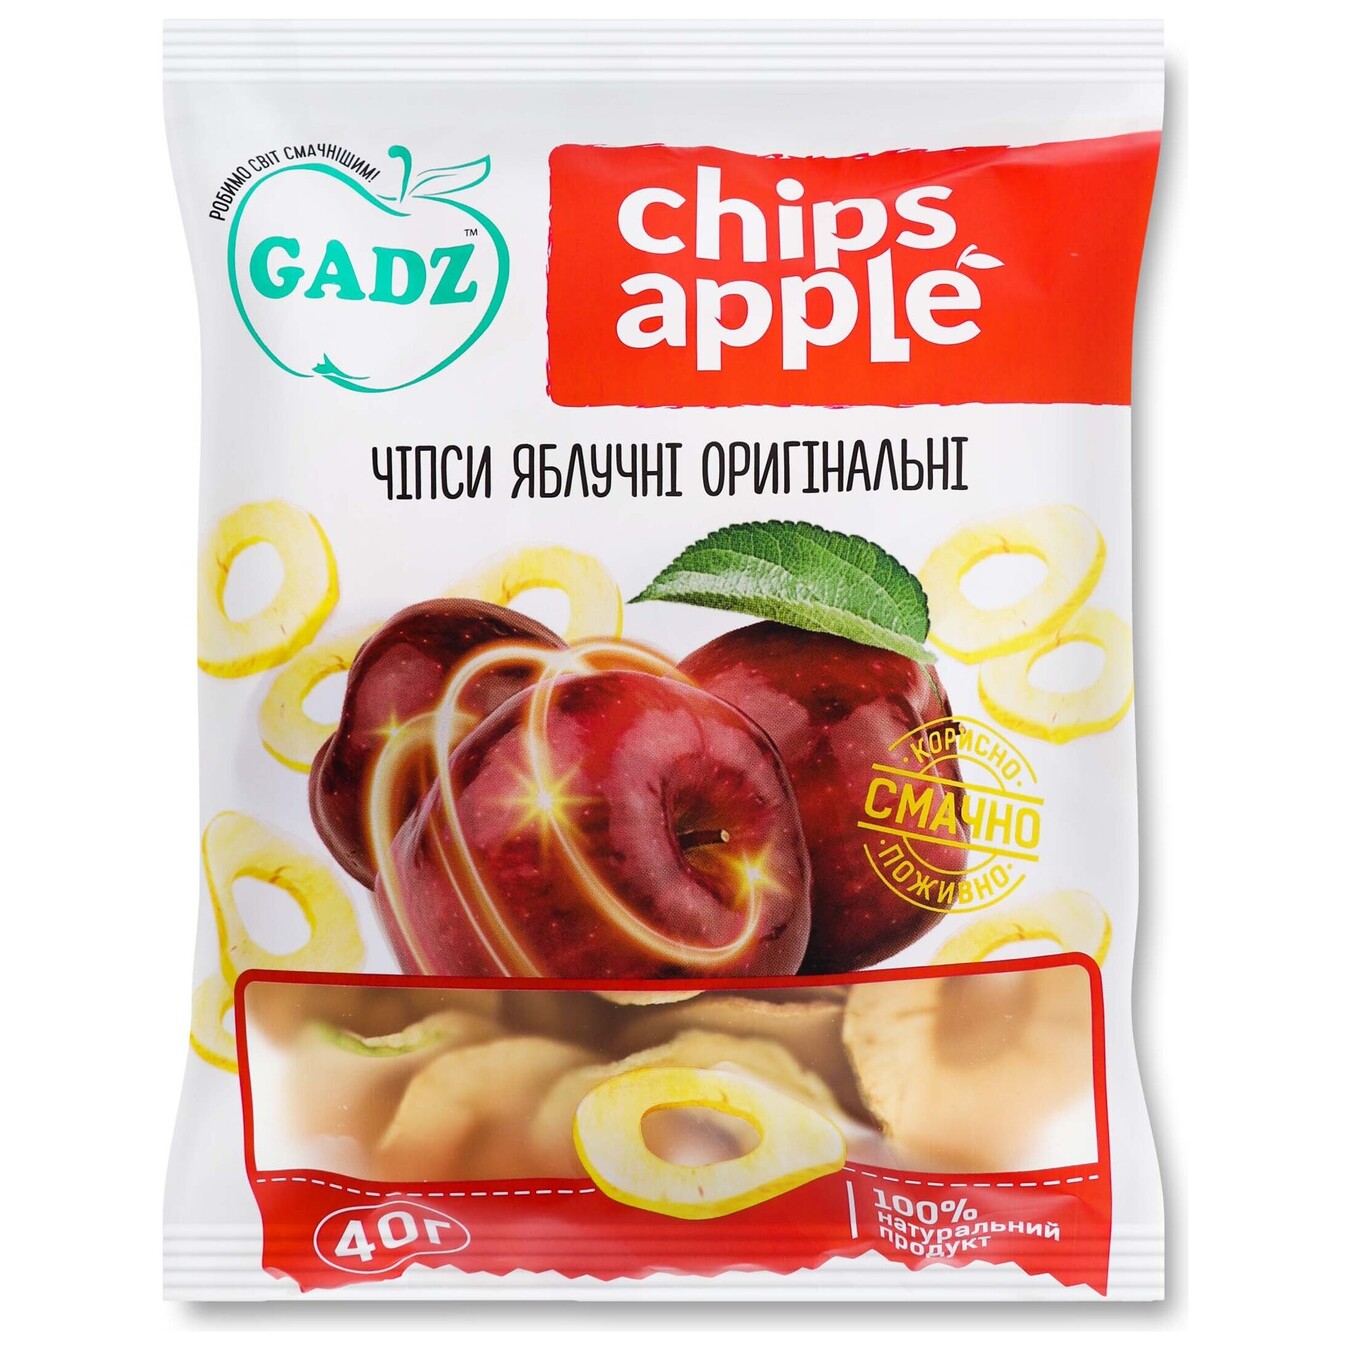 Original GADZ apple chips 40g